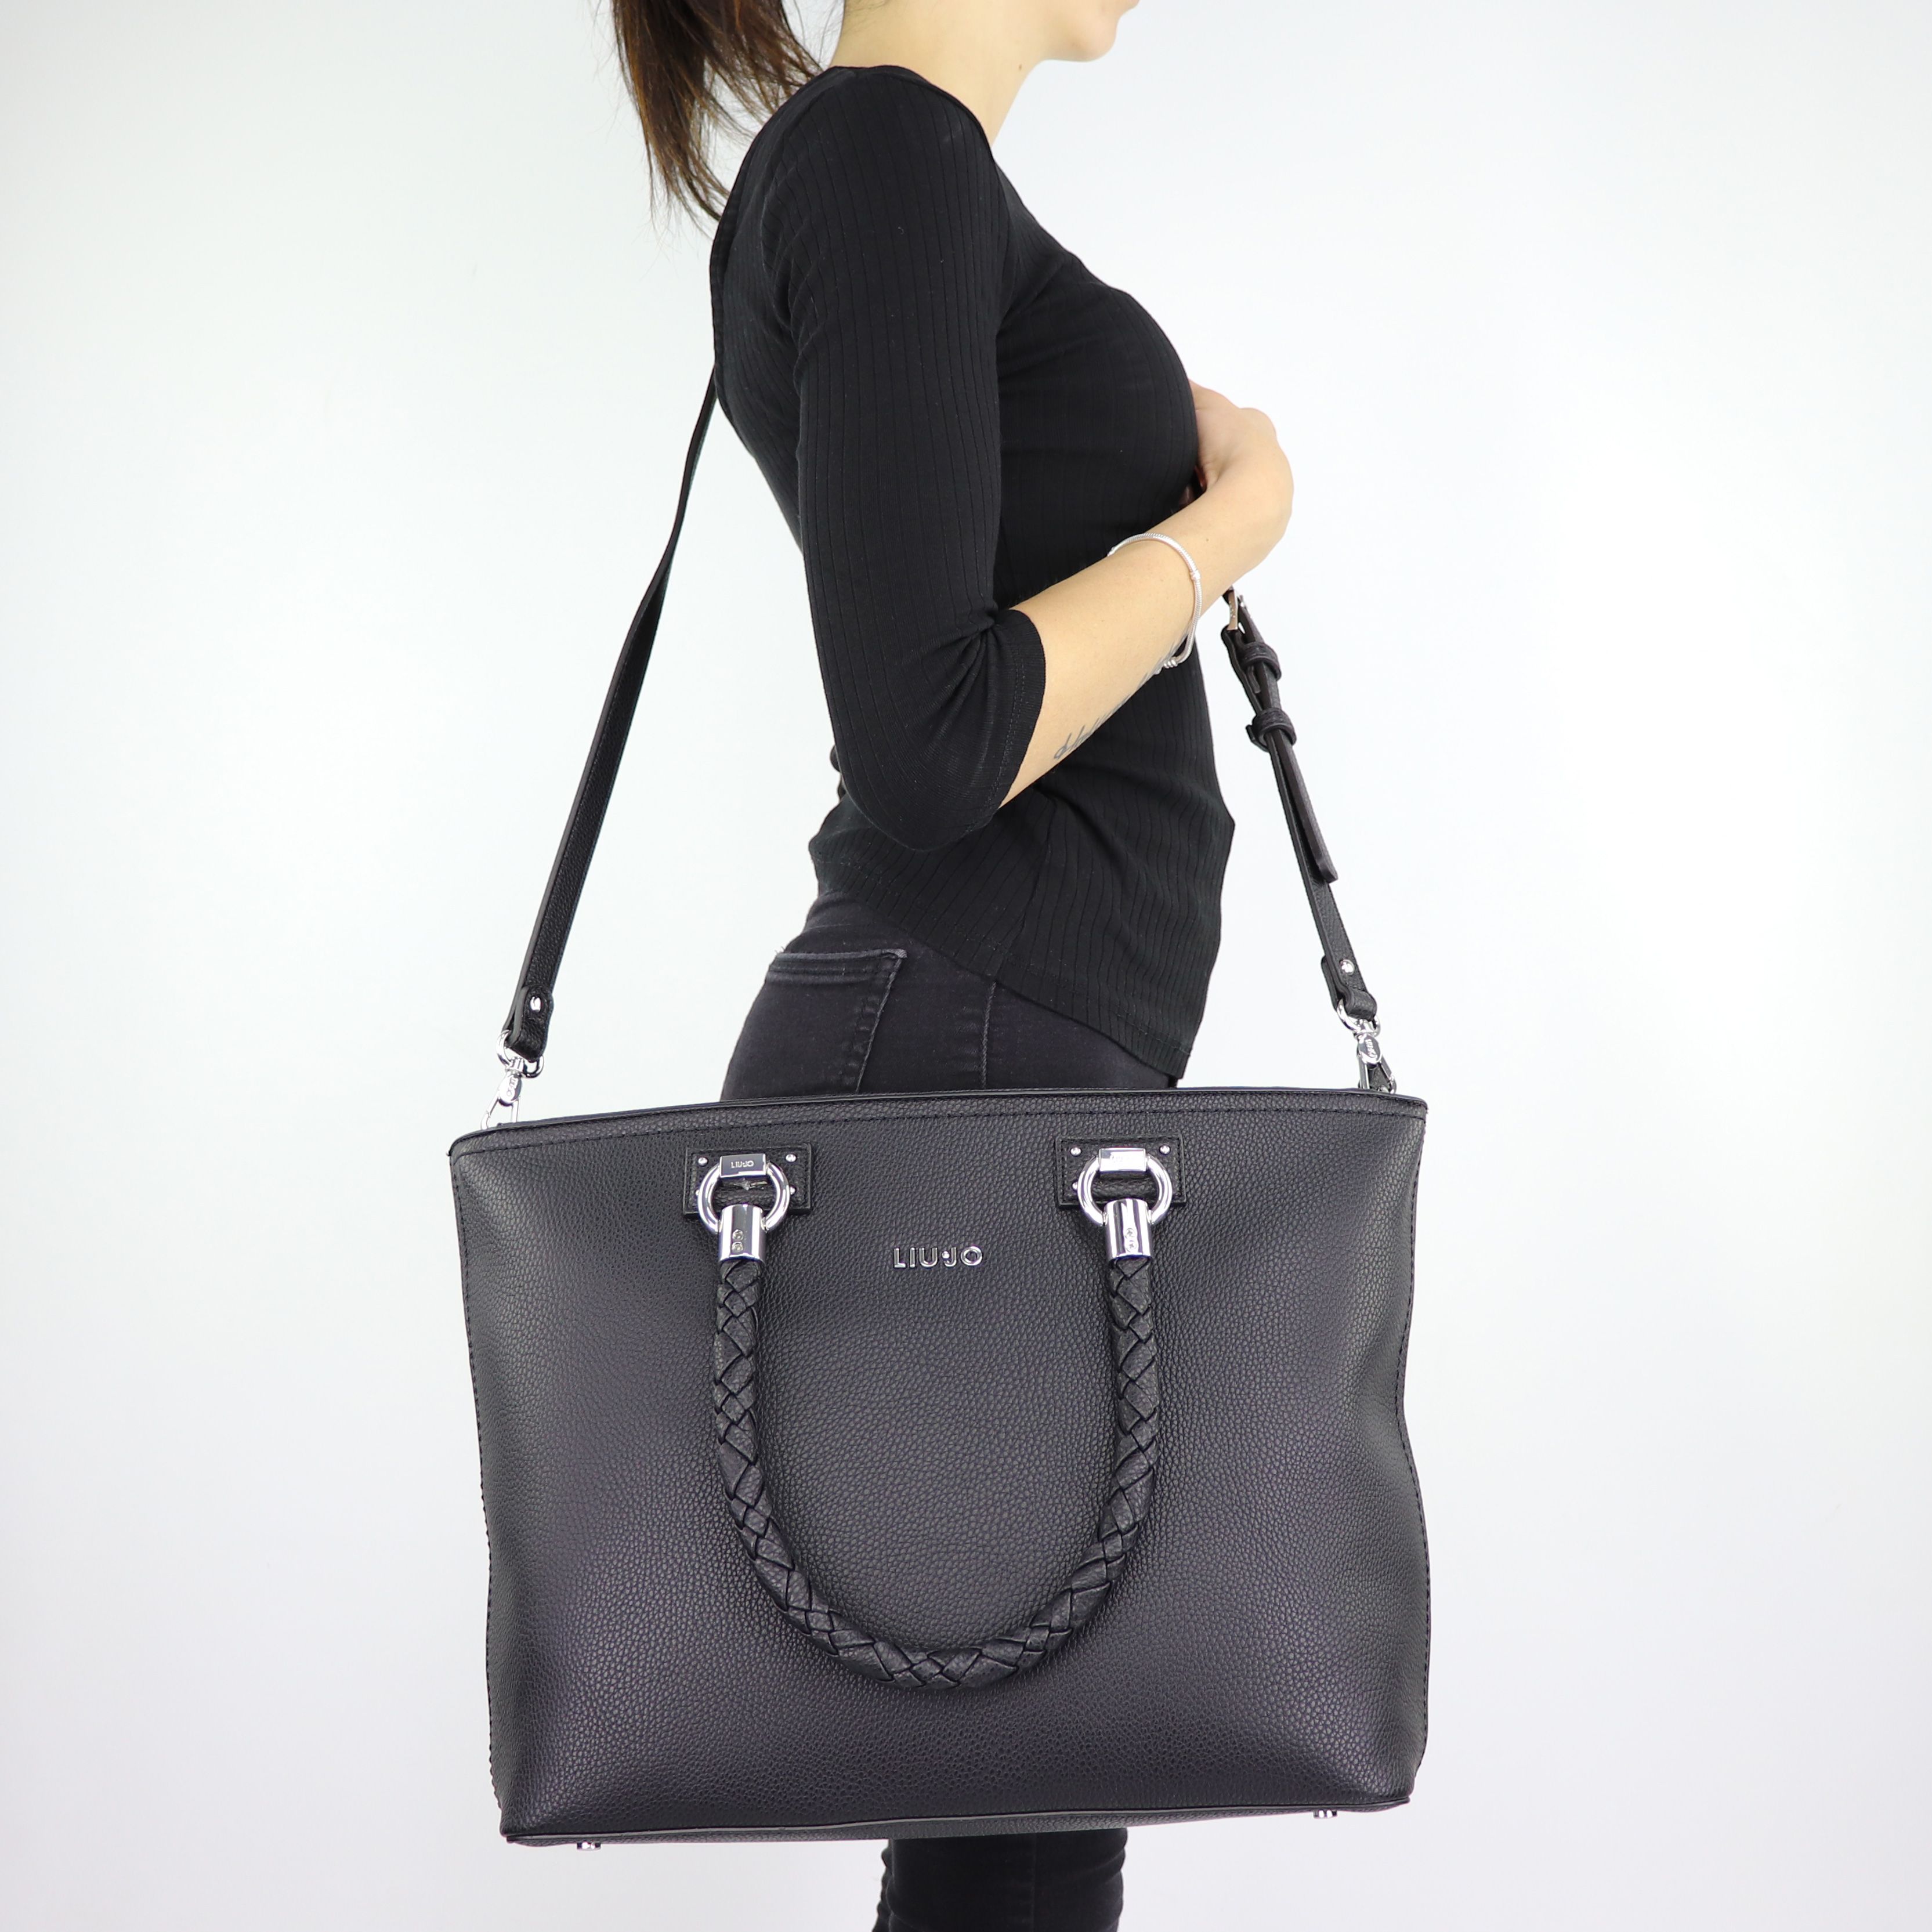 Shopping bag Liu Jo Tote Manhattan black size L A68094 E0011 - In More